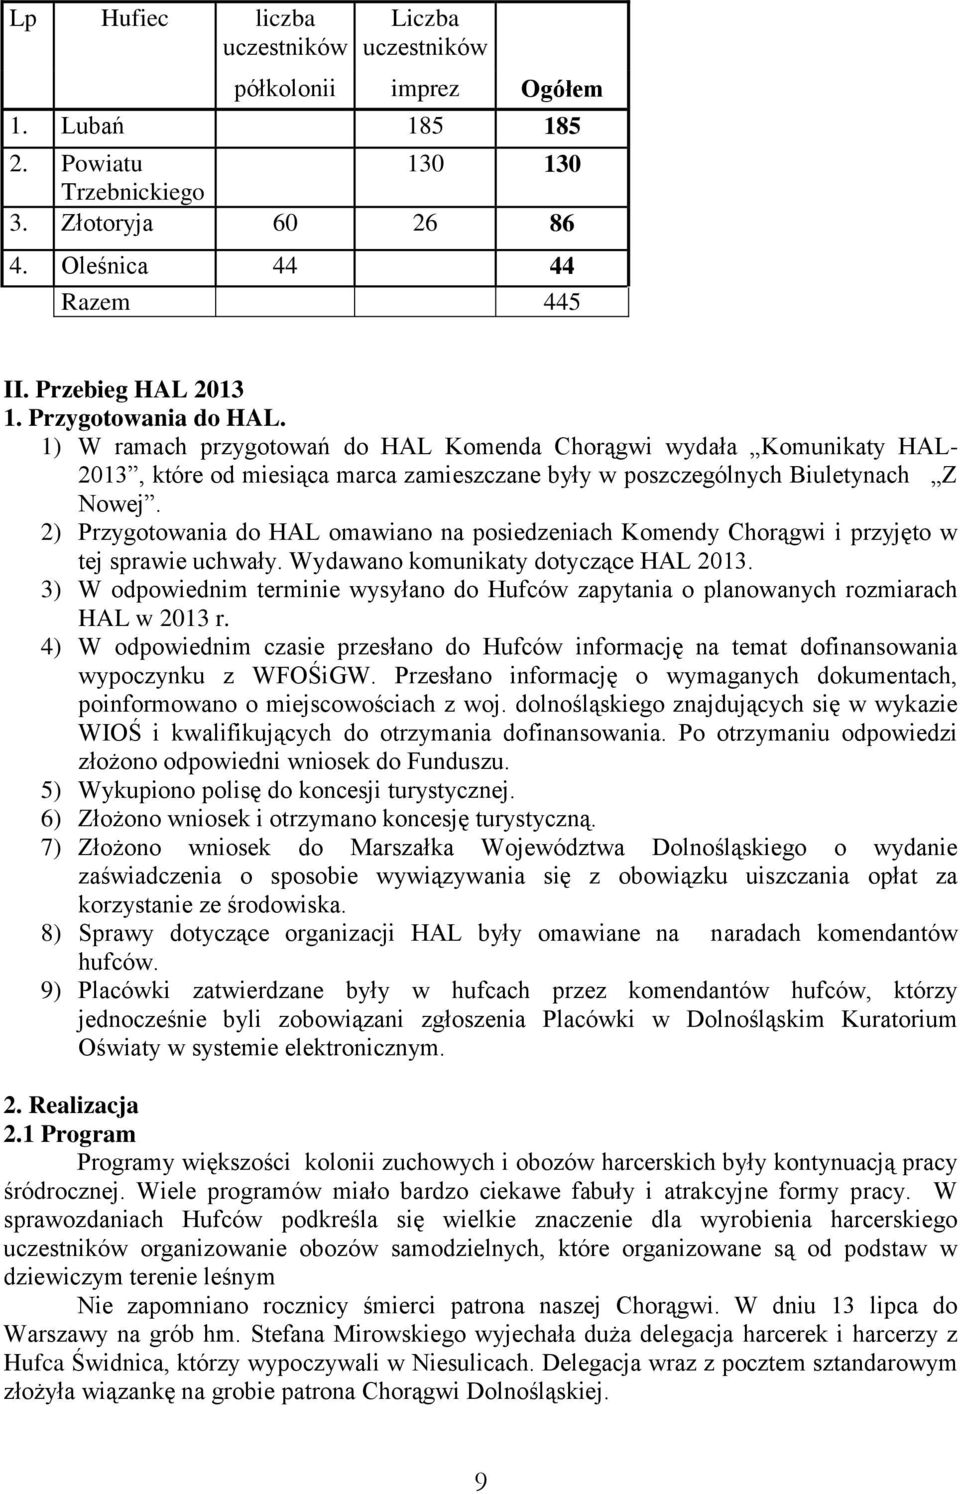 2) Przygotowania do HAL omawiano na posiedzeniach Komendy Chorągwi i przyjęto w tej sprawie uchwały. Wydawano komunikaty dotyczące HAL 2013.